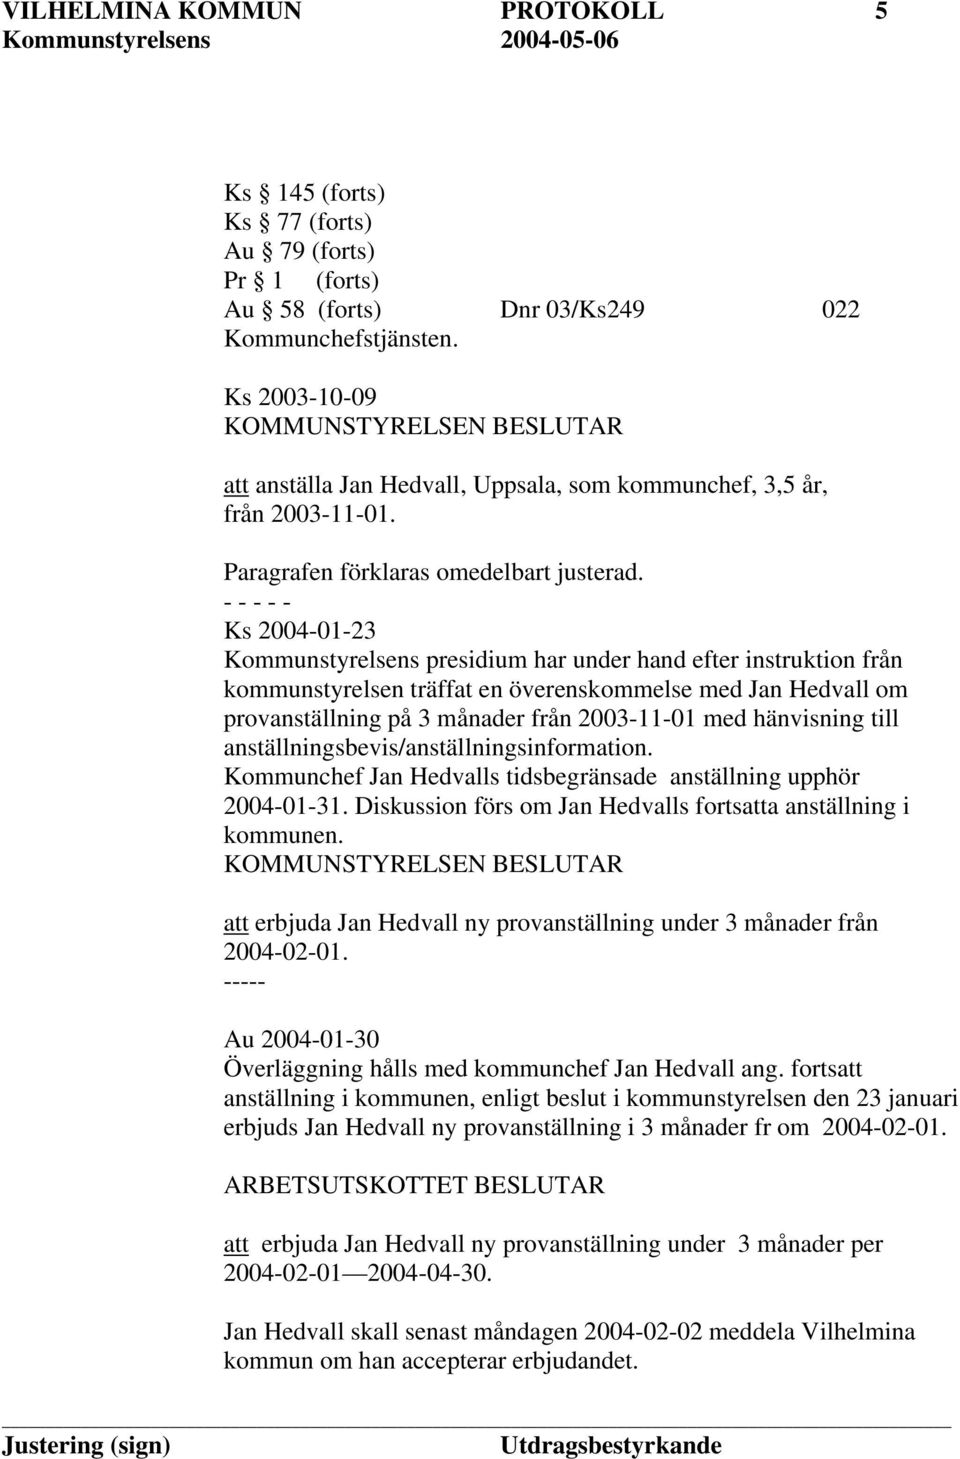 Ks 2004-01-23 Kommunstyrelsens presidium har under hand efter instruktion från kommunstyrelsen träffat en överenskommelse med Jan Hedvall om provanställning på 3 månader från 2003-11-01 med